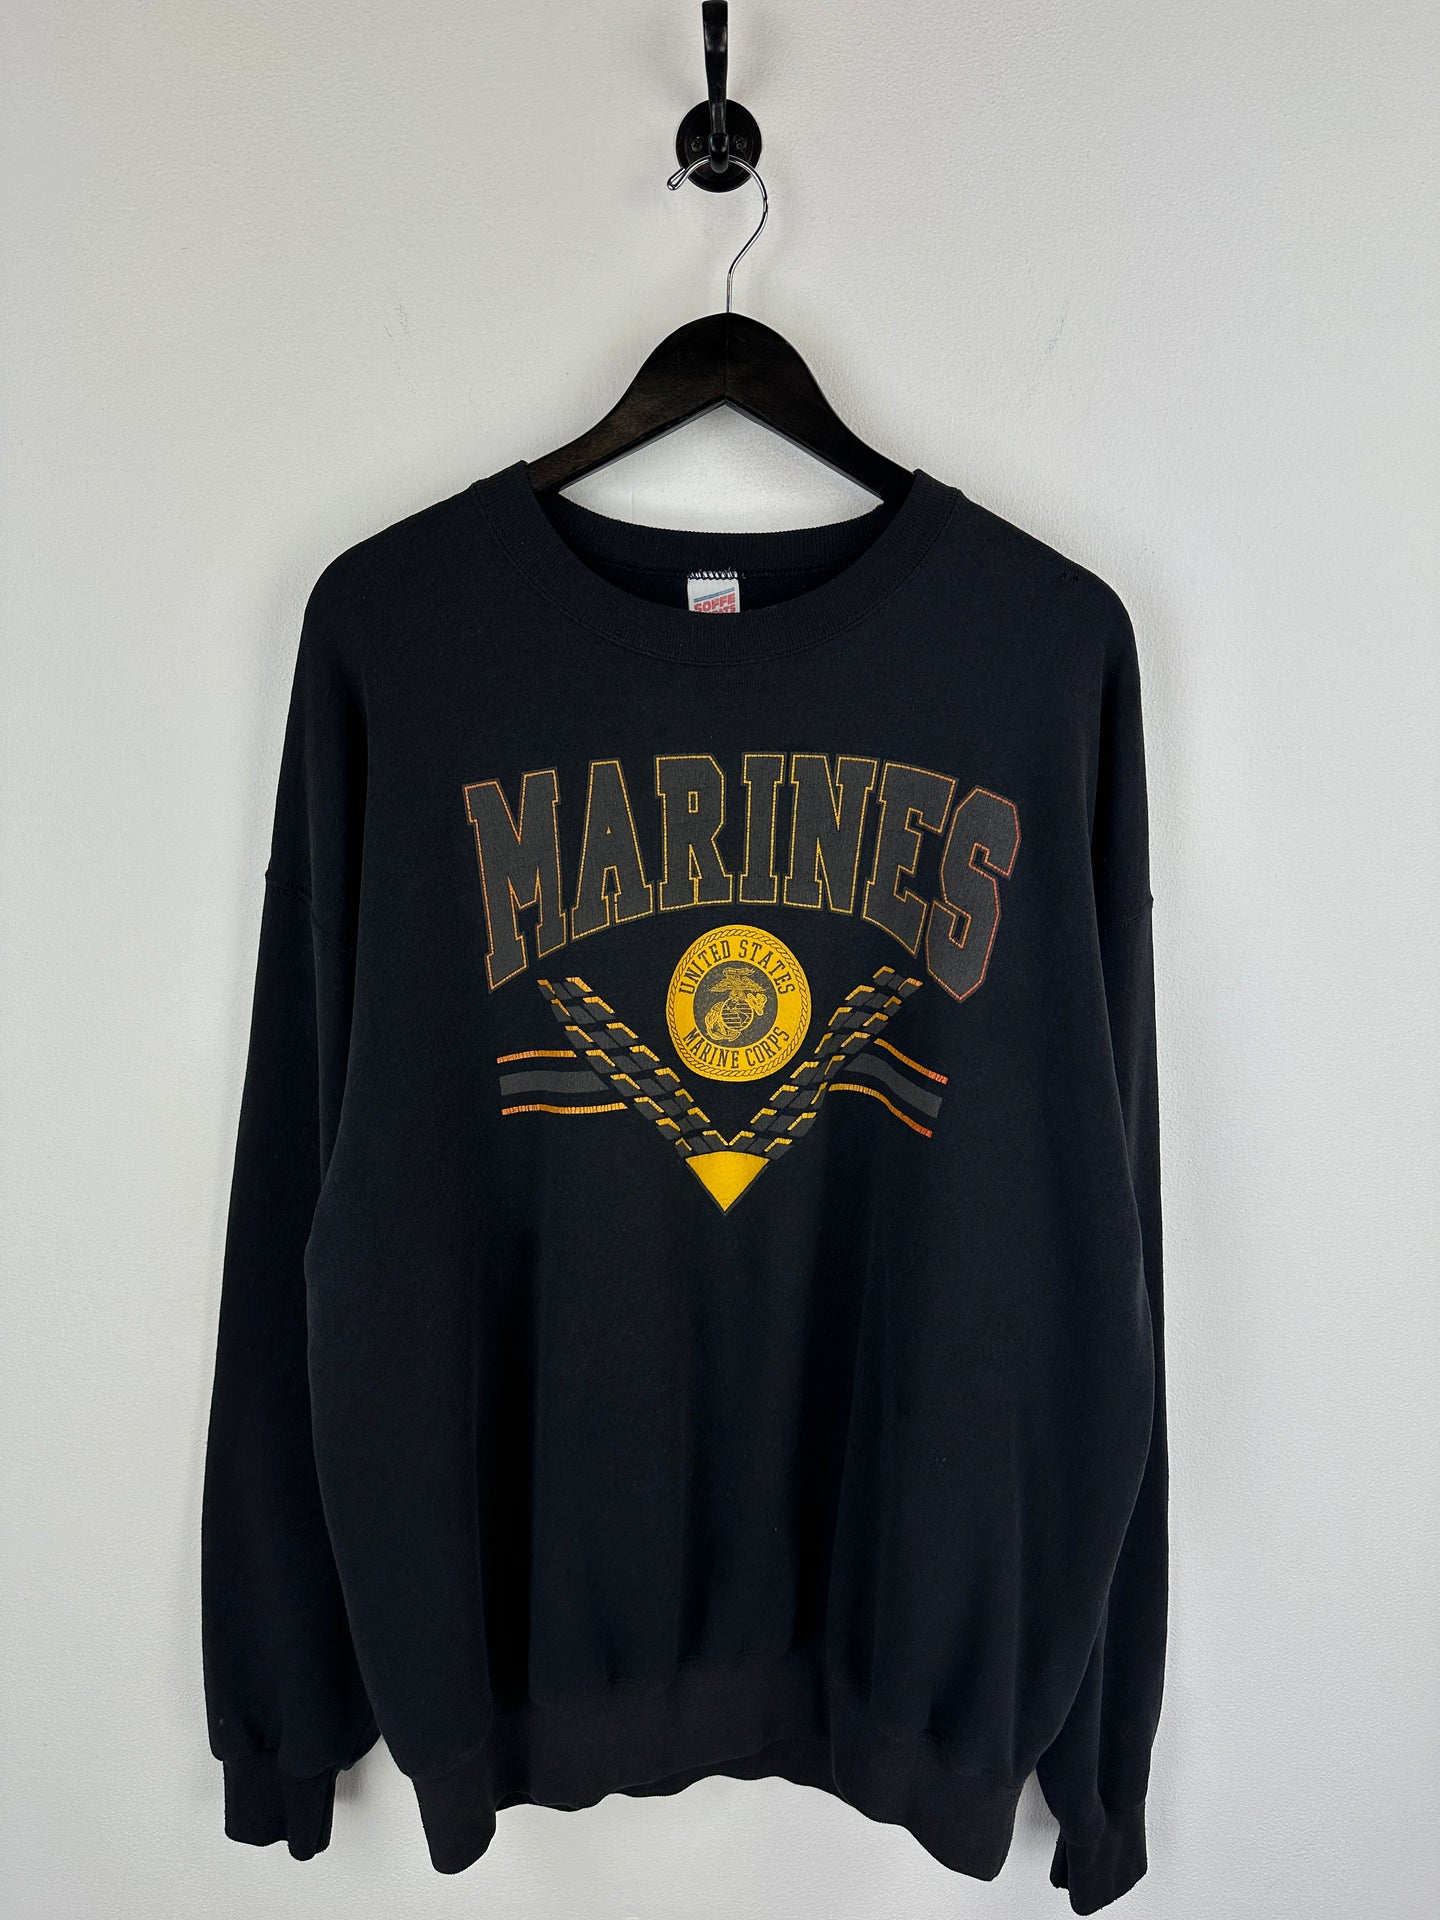 Vintage Marines Sweatshirt (XL)